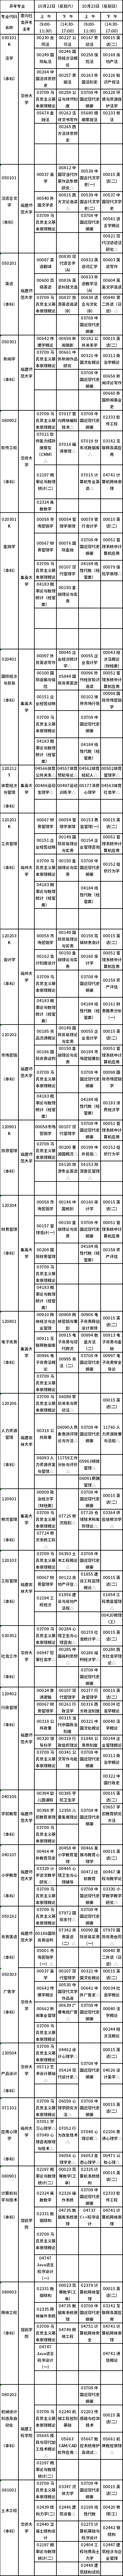 福建省2022年10月自考开考专业理论课程考试时间安排表